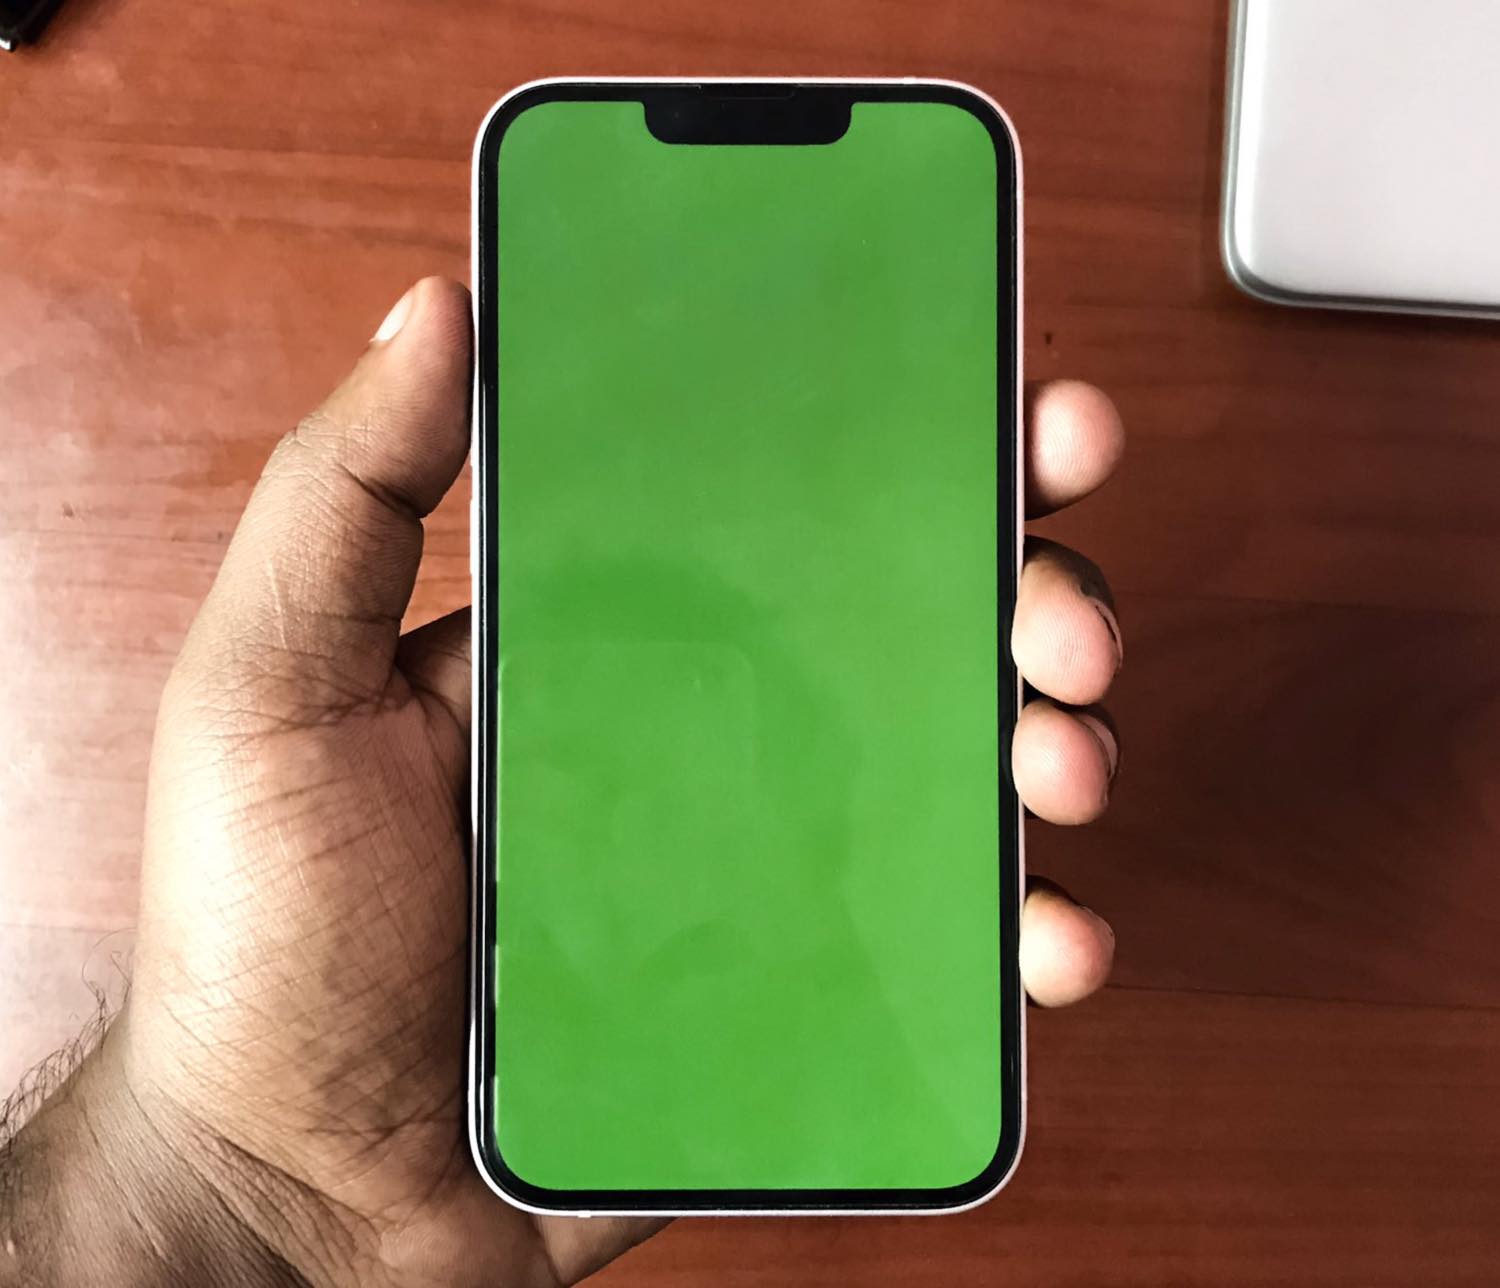 ｢iOS 16.1｣へのアップデート時に｢iPhone 13｣のディスプレイが緑一色になるグリーンスクリーン問題が一部で報告される